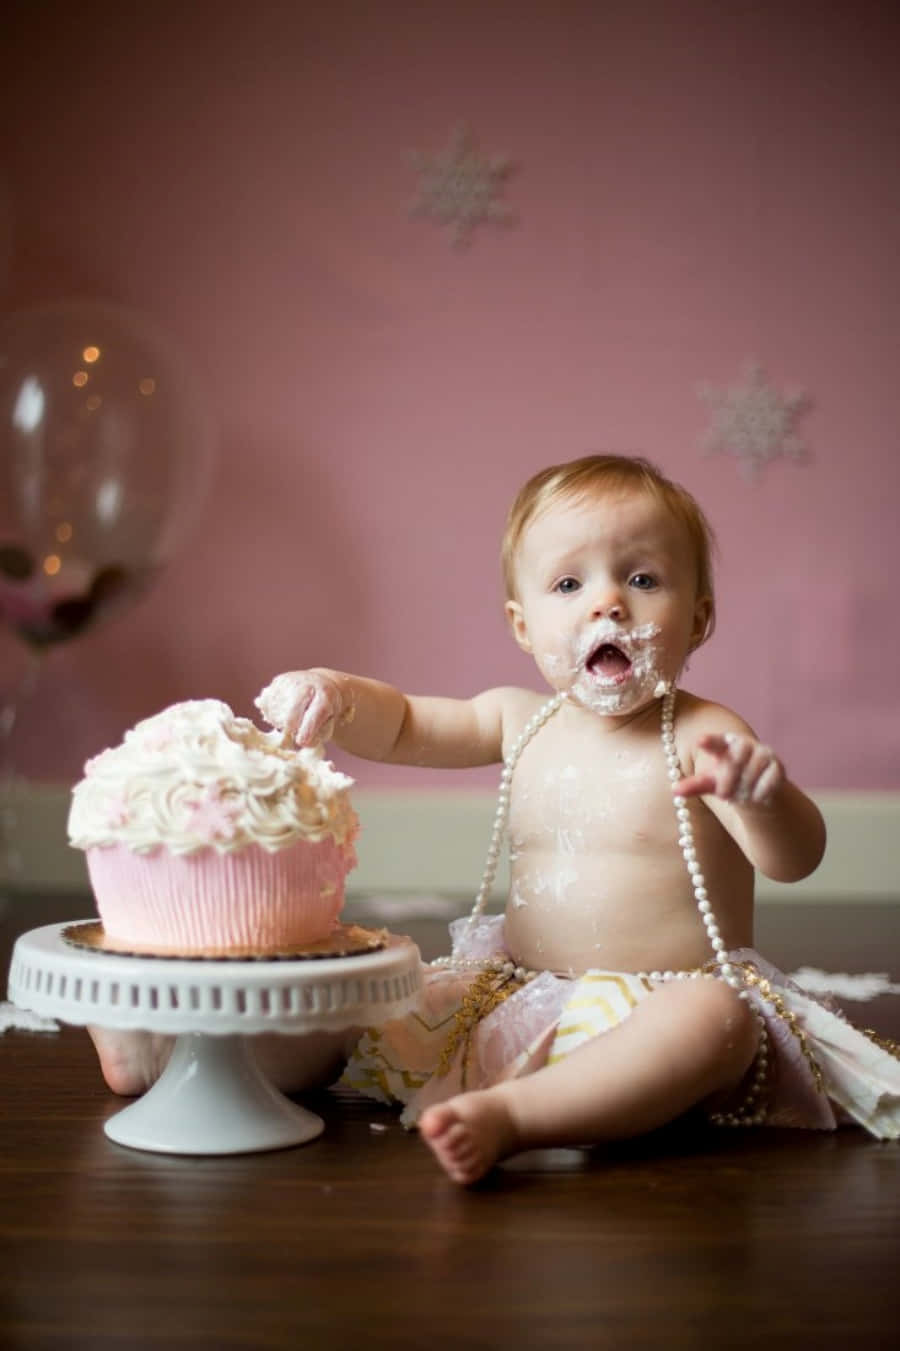 Unabambina Sta Mangiando Una Cupcake Di Fronte A Uno Sfondo Rosa.